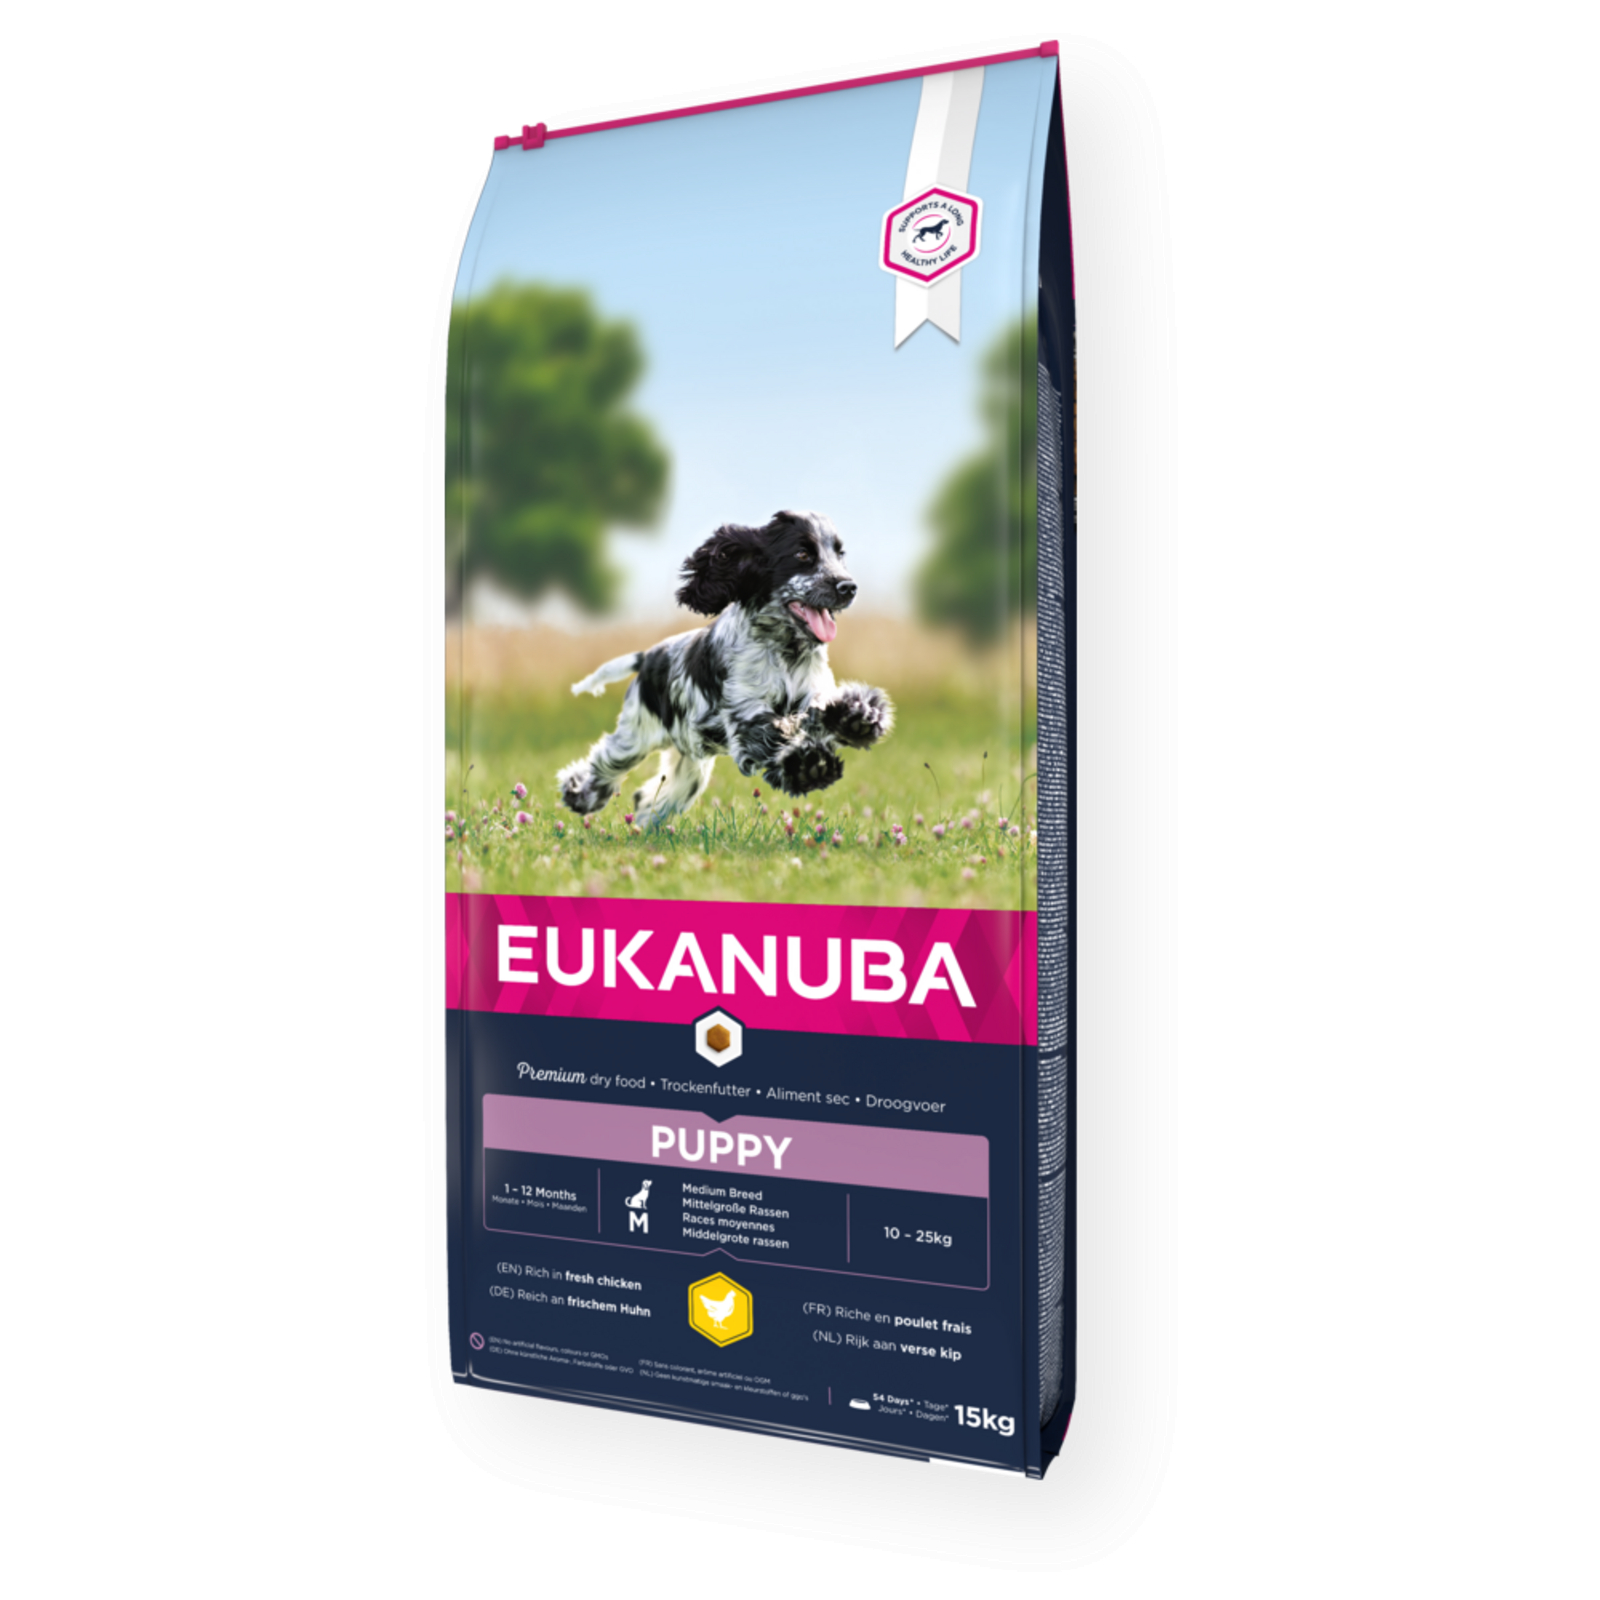 Eukanuba Growing Puppy Medium Breed für mittelgroße Welpen